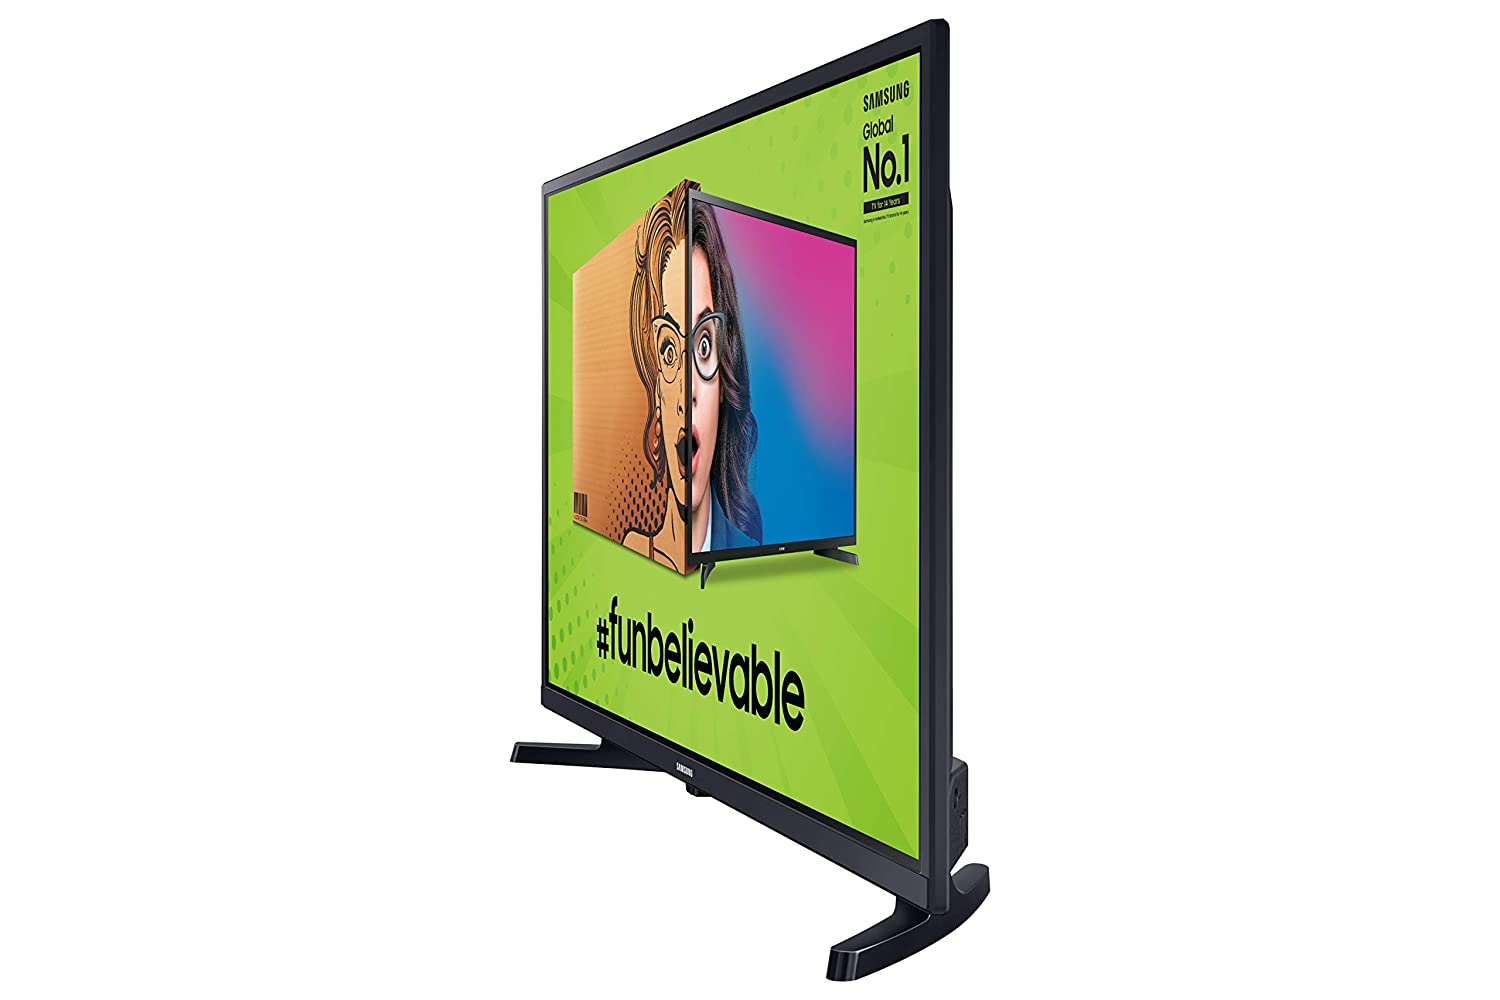 Samsung Smart Tv Led 32 - La boutique